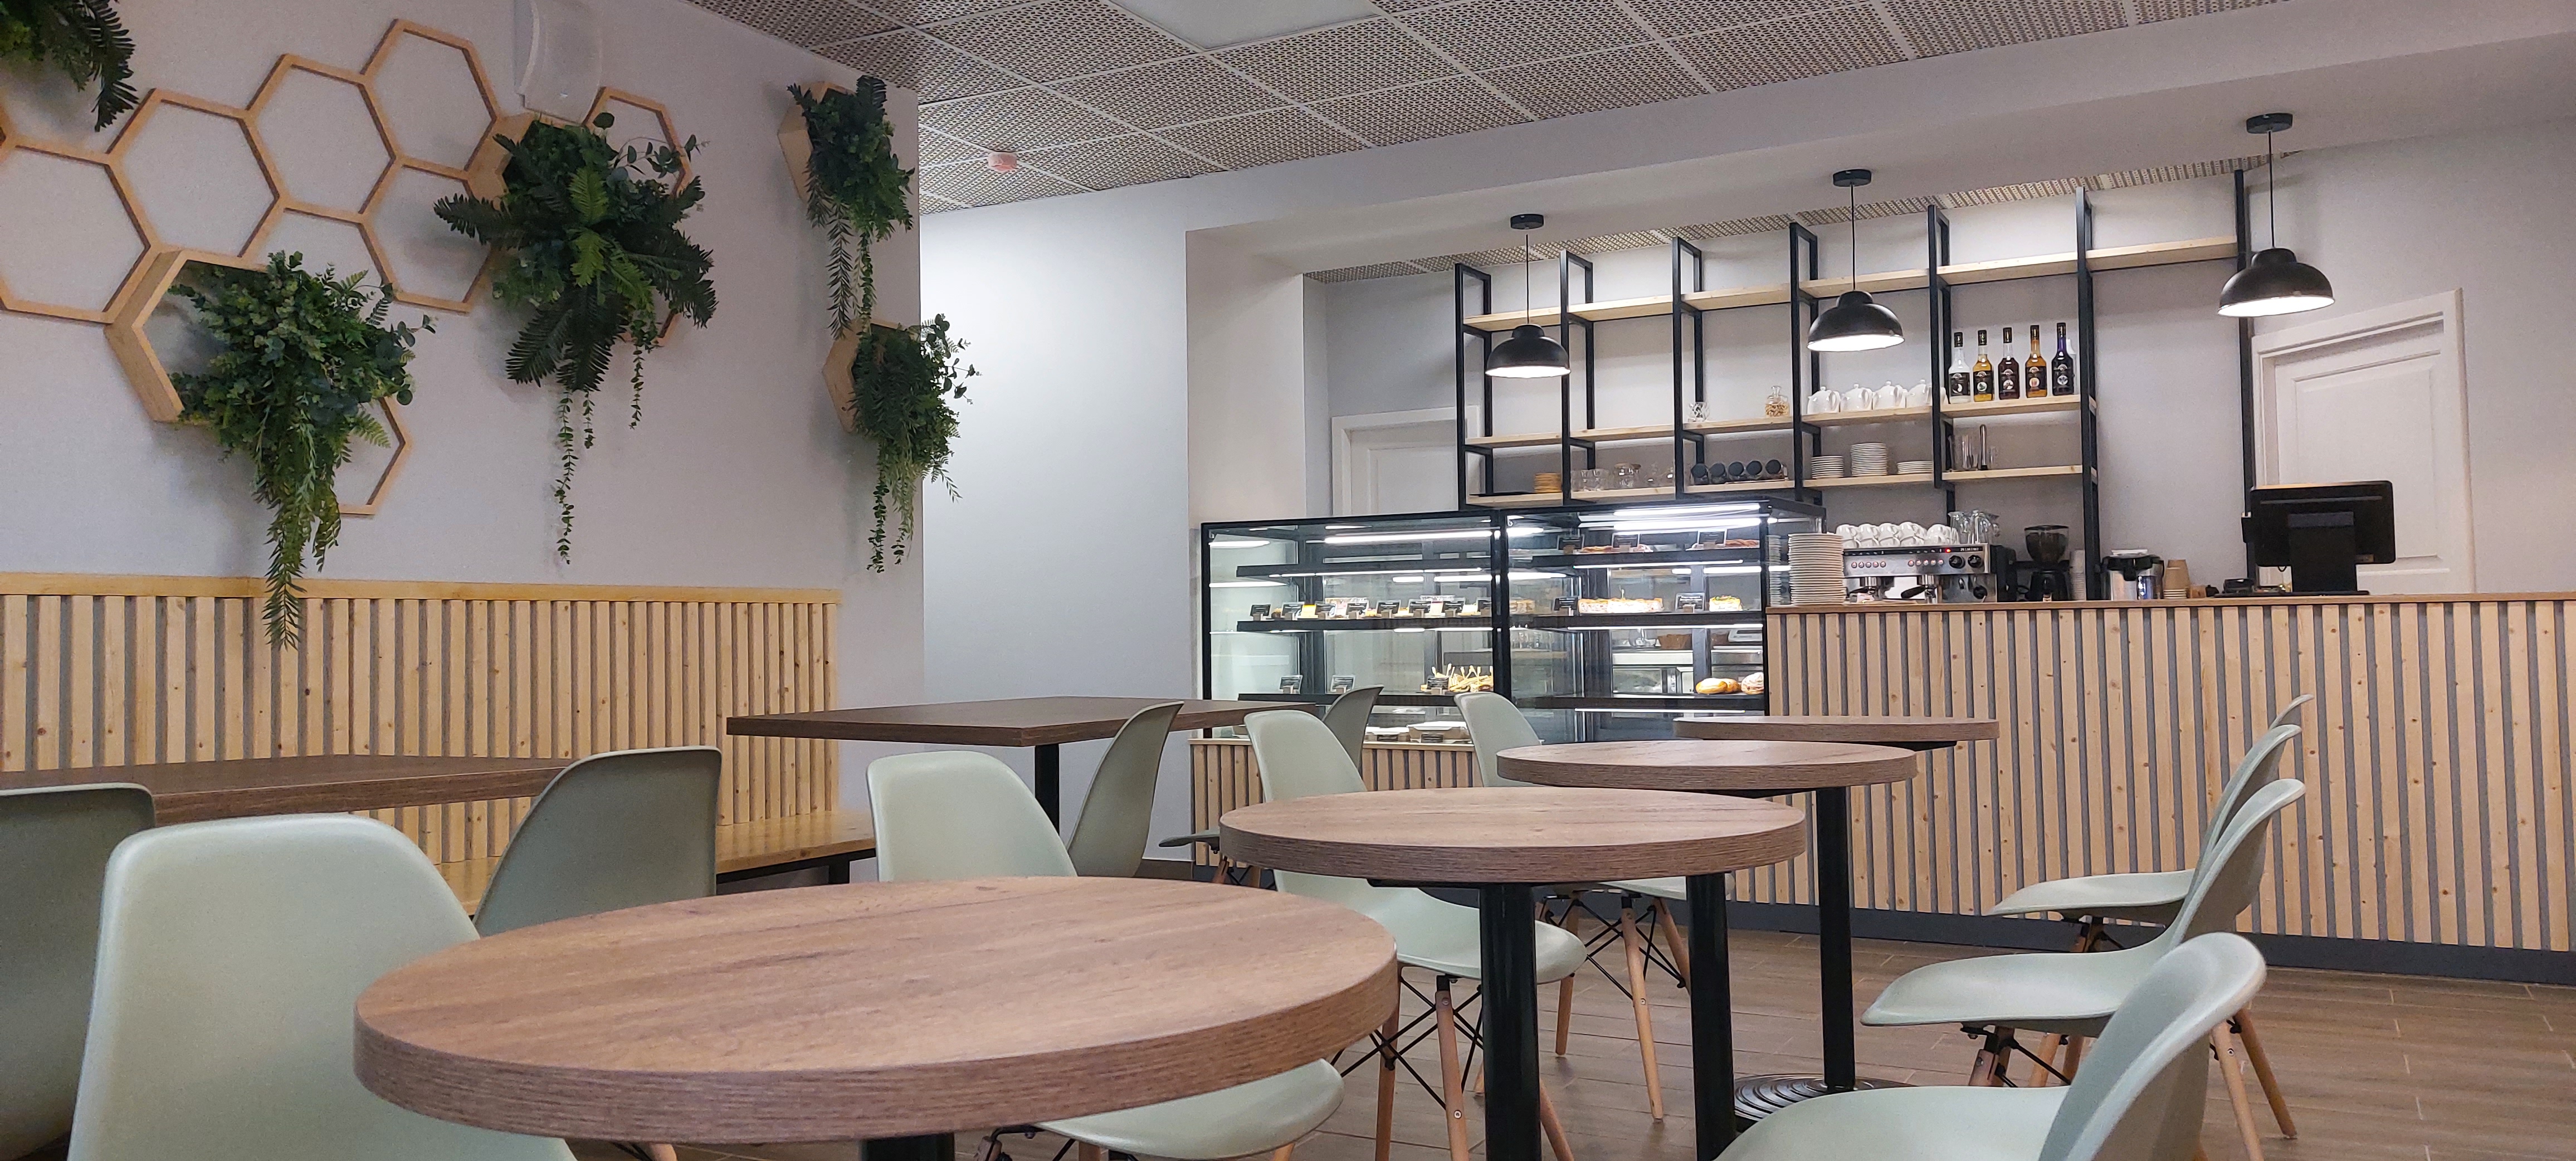 В СПбГУ открылось кафе нового формата 